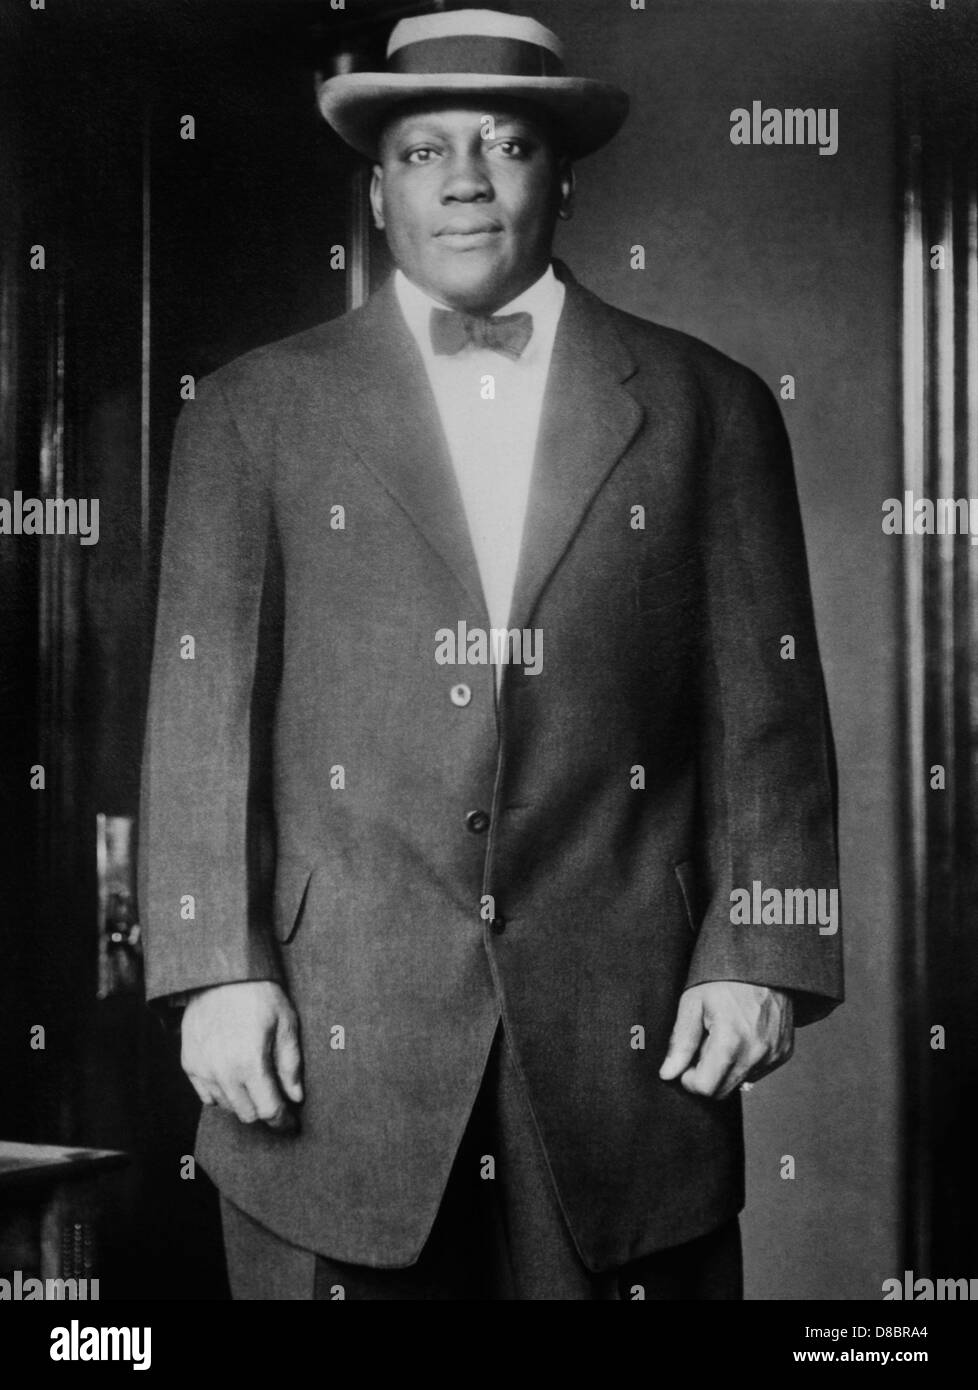 Oldtimer-Foto des Boxers Jack Johnson (1878 – 1946) – Johnson, bekannt als „der Galveston-Riese“, war der erste Afrikaner, der Weltmeister im Schwergewicht wurde und den Titel von 1908 bis 1915 hielt. Stockfoto